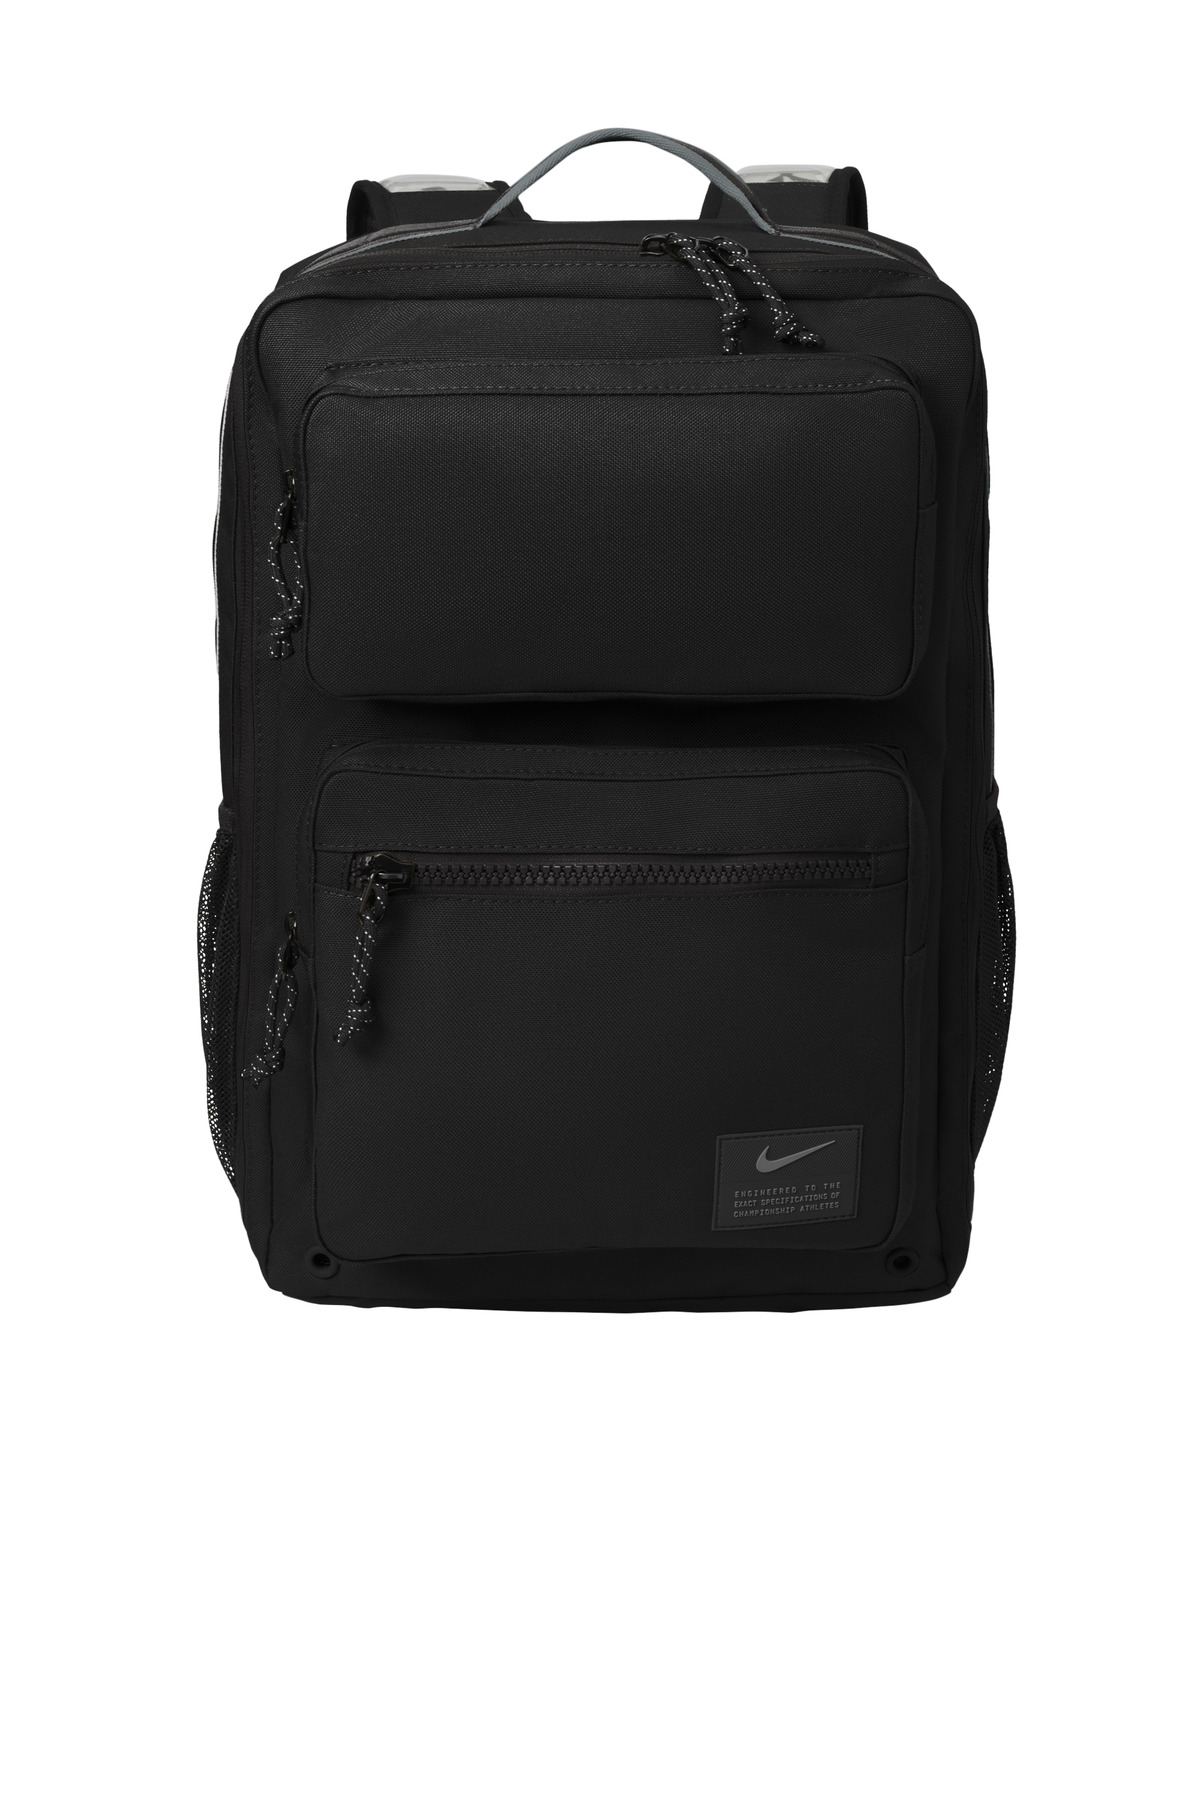 Nike Utility Speed Backpack-Nike